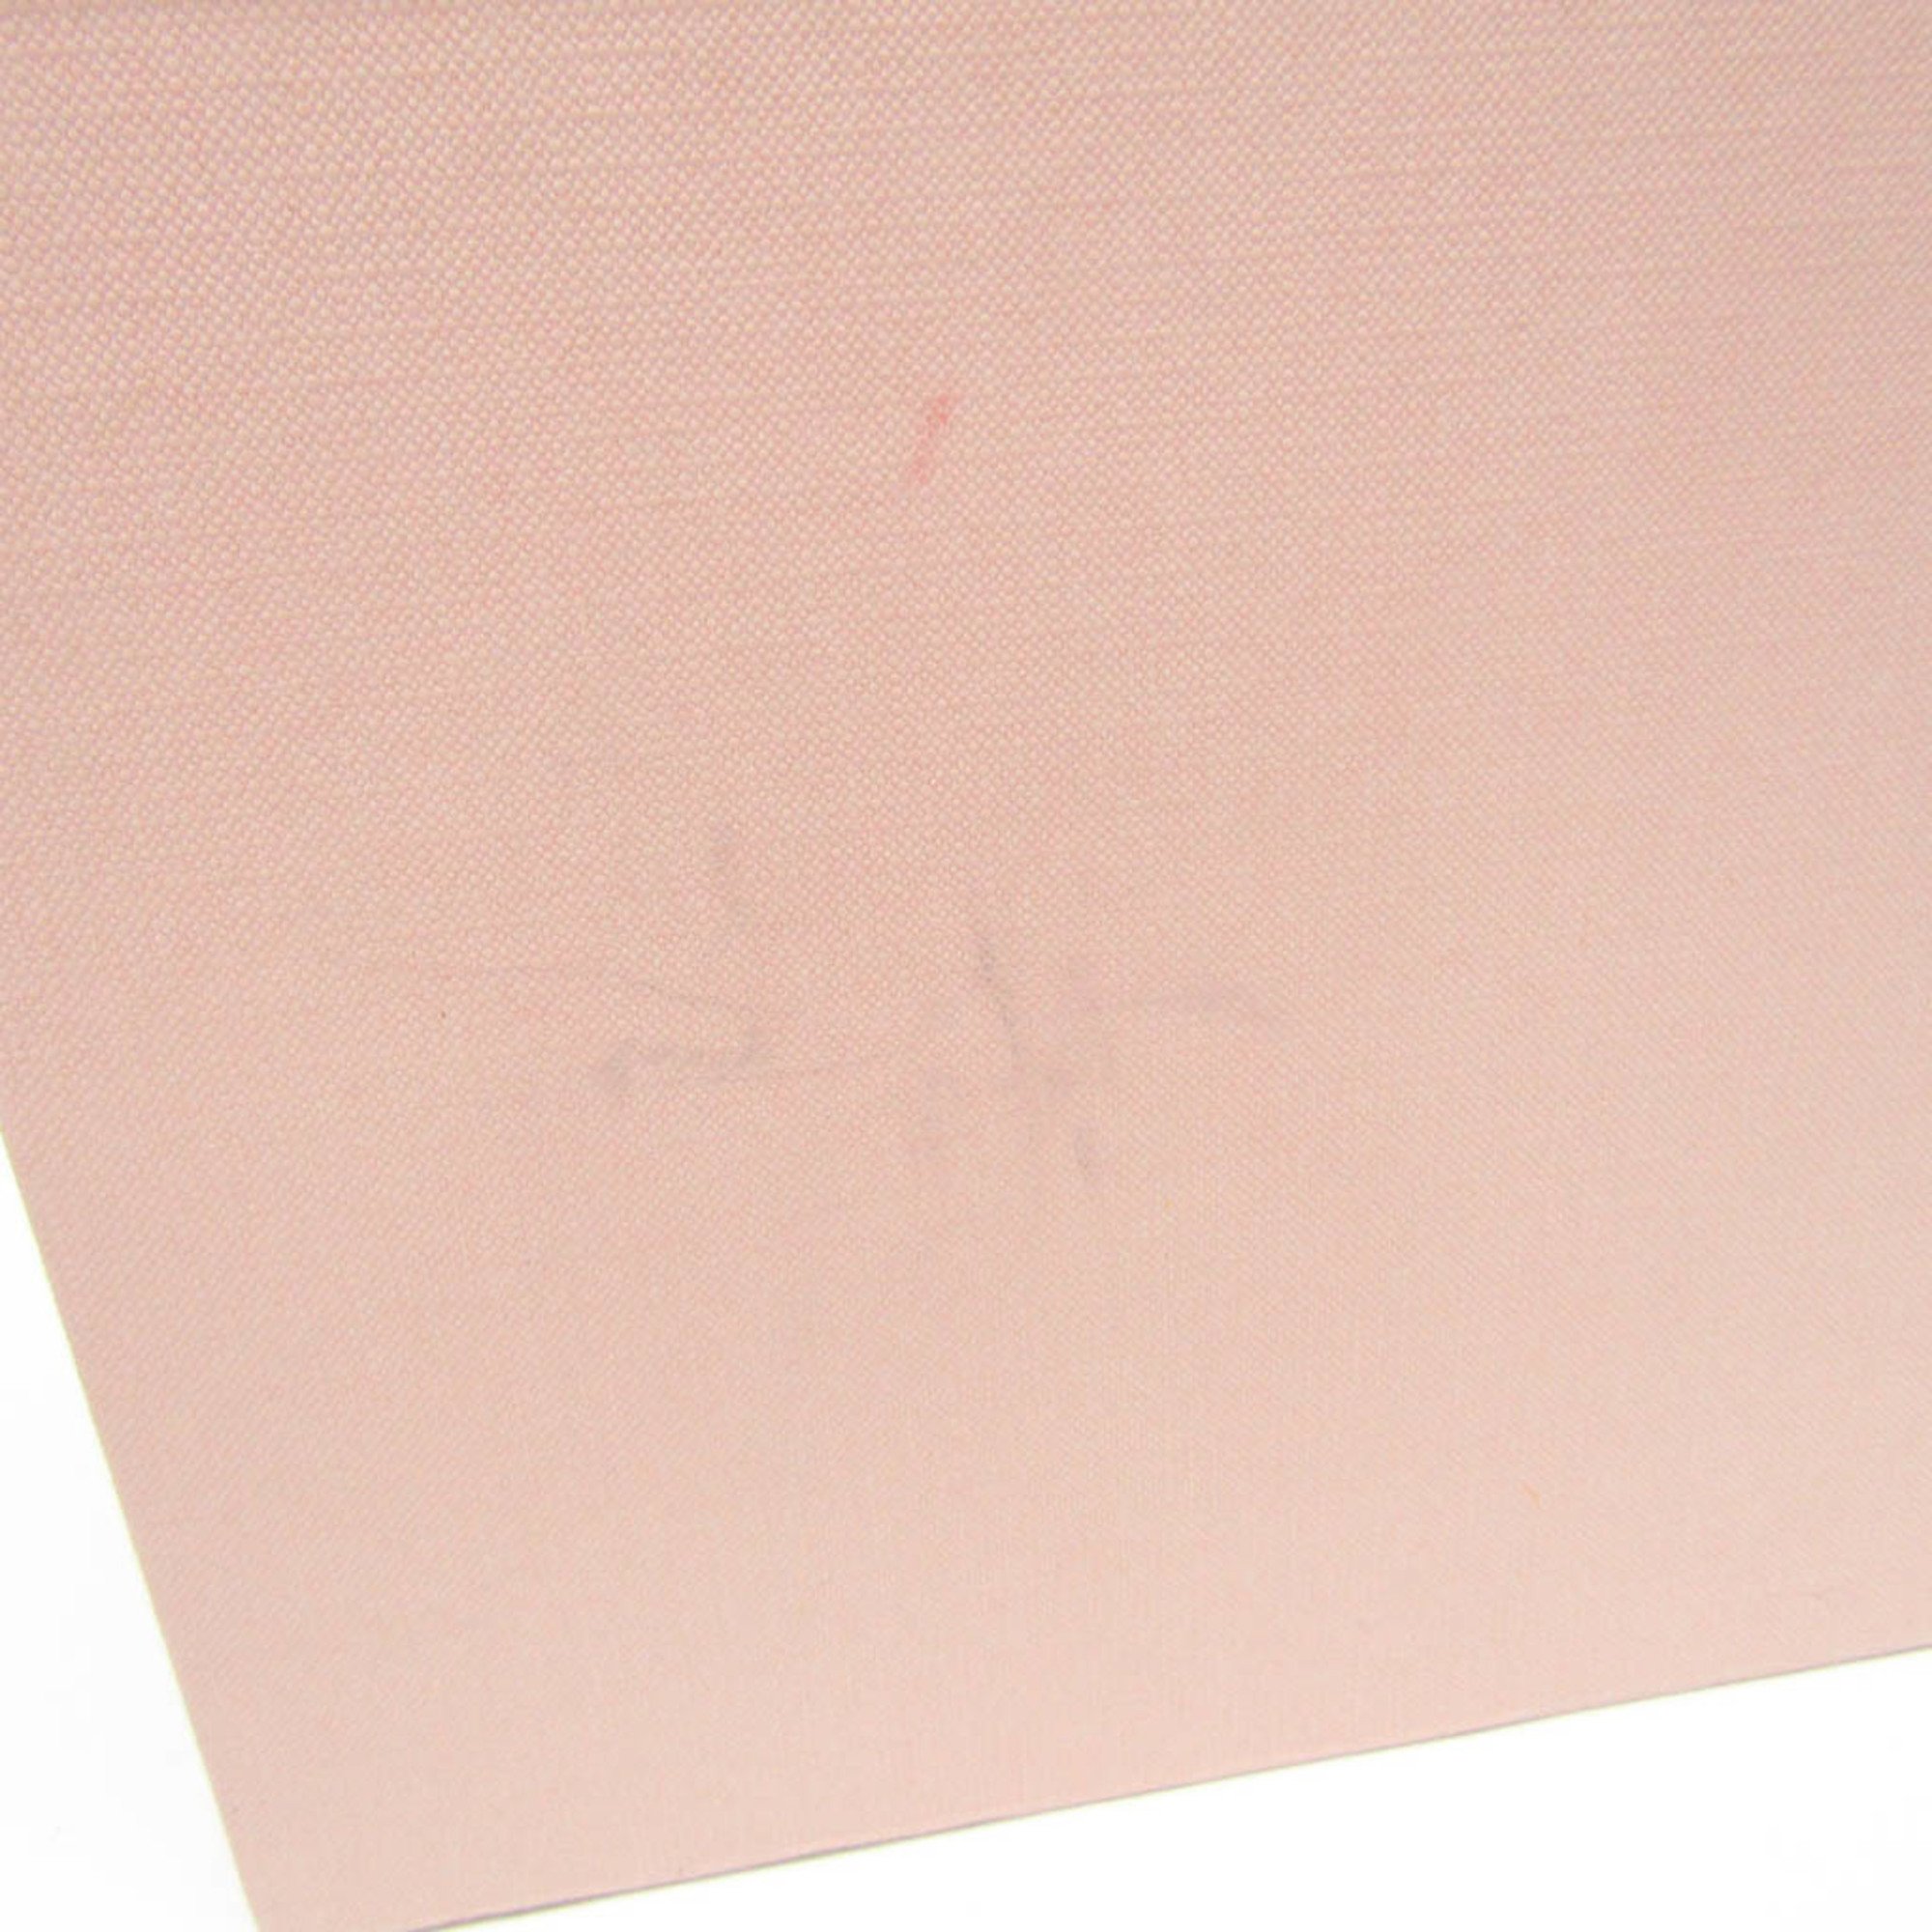 ミュウミュウ(Miu Miu) リボン ストローキャップ Mサイズ 5HC154 レディース キャップ ベージュ,ピンク